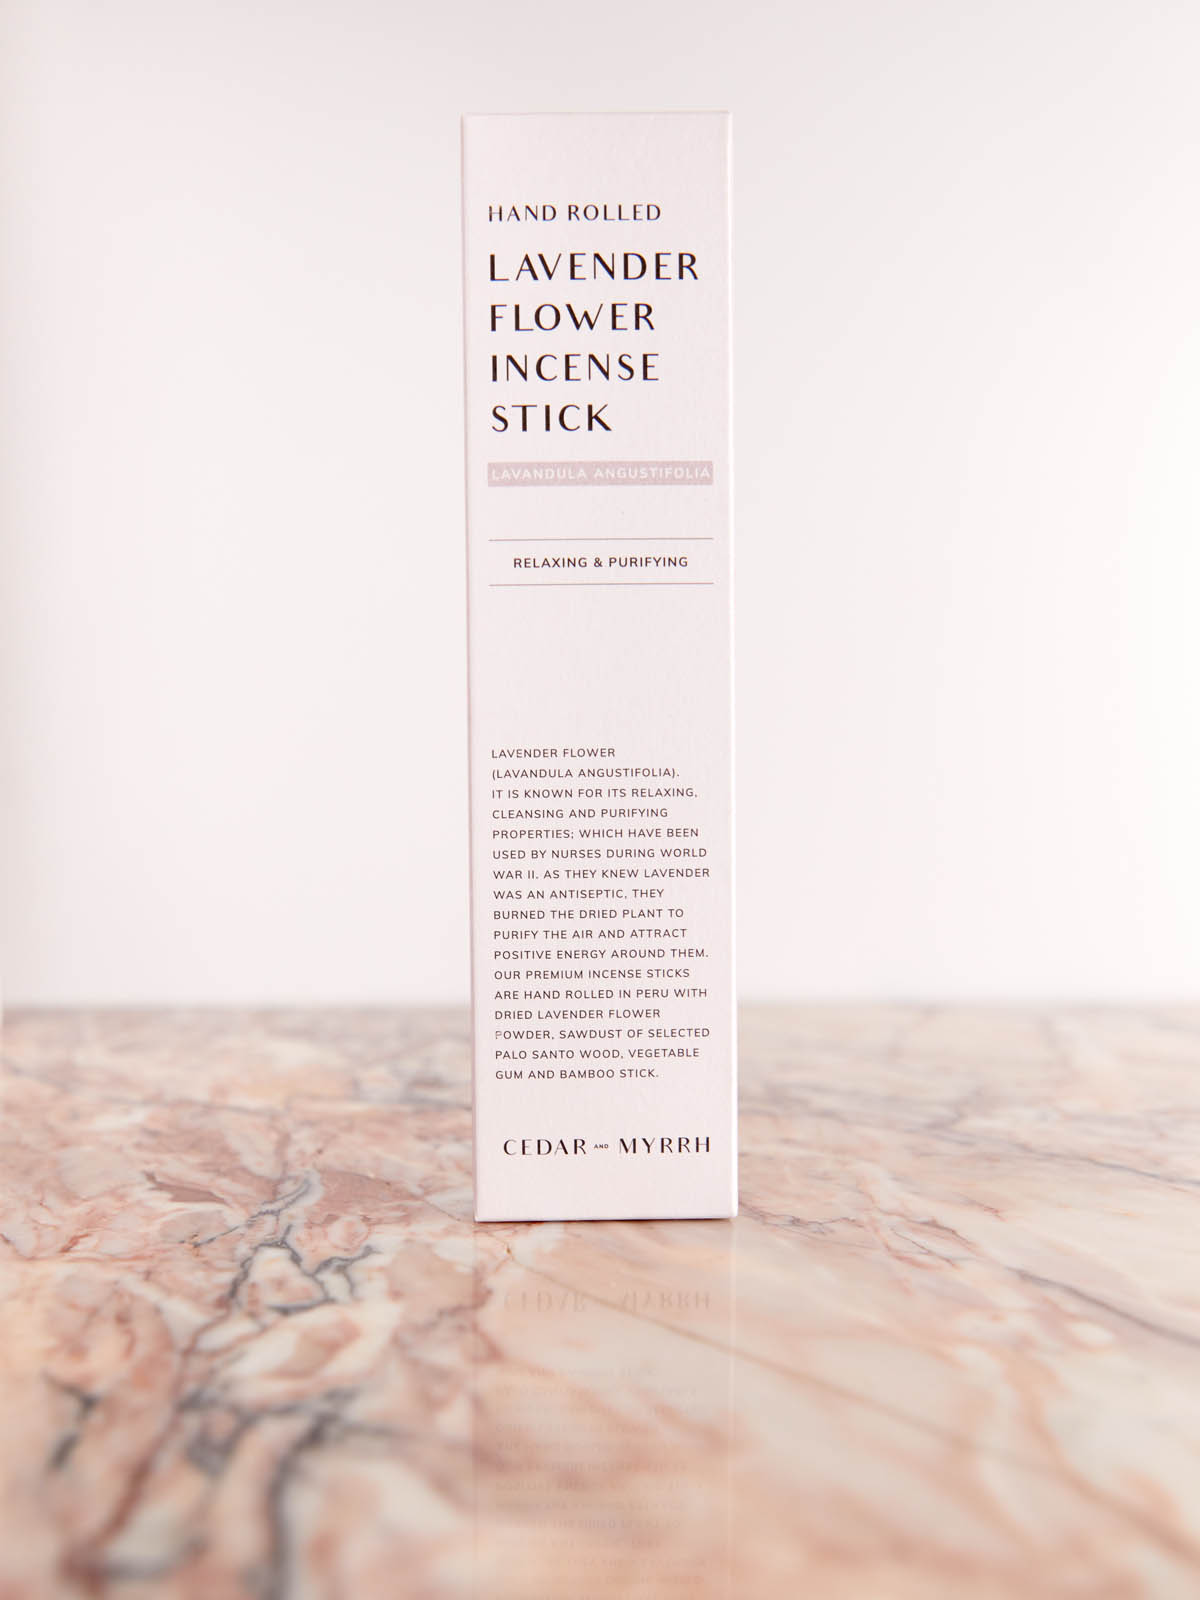 Hand Rolled Lavender Flower Incense Sticks by Cedar & Myrrh box on pink marble